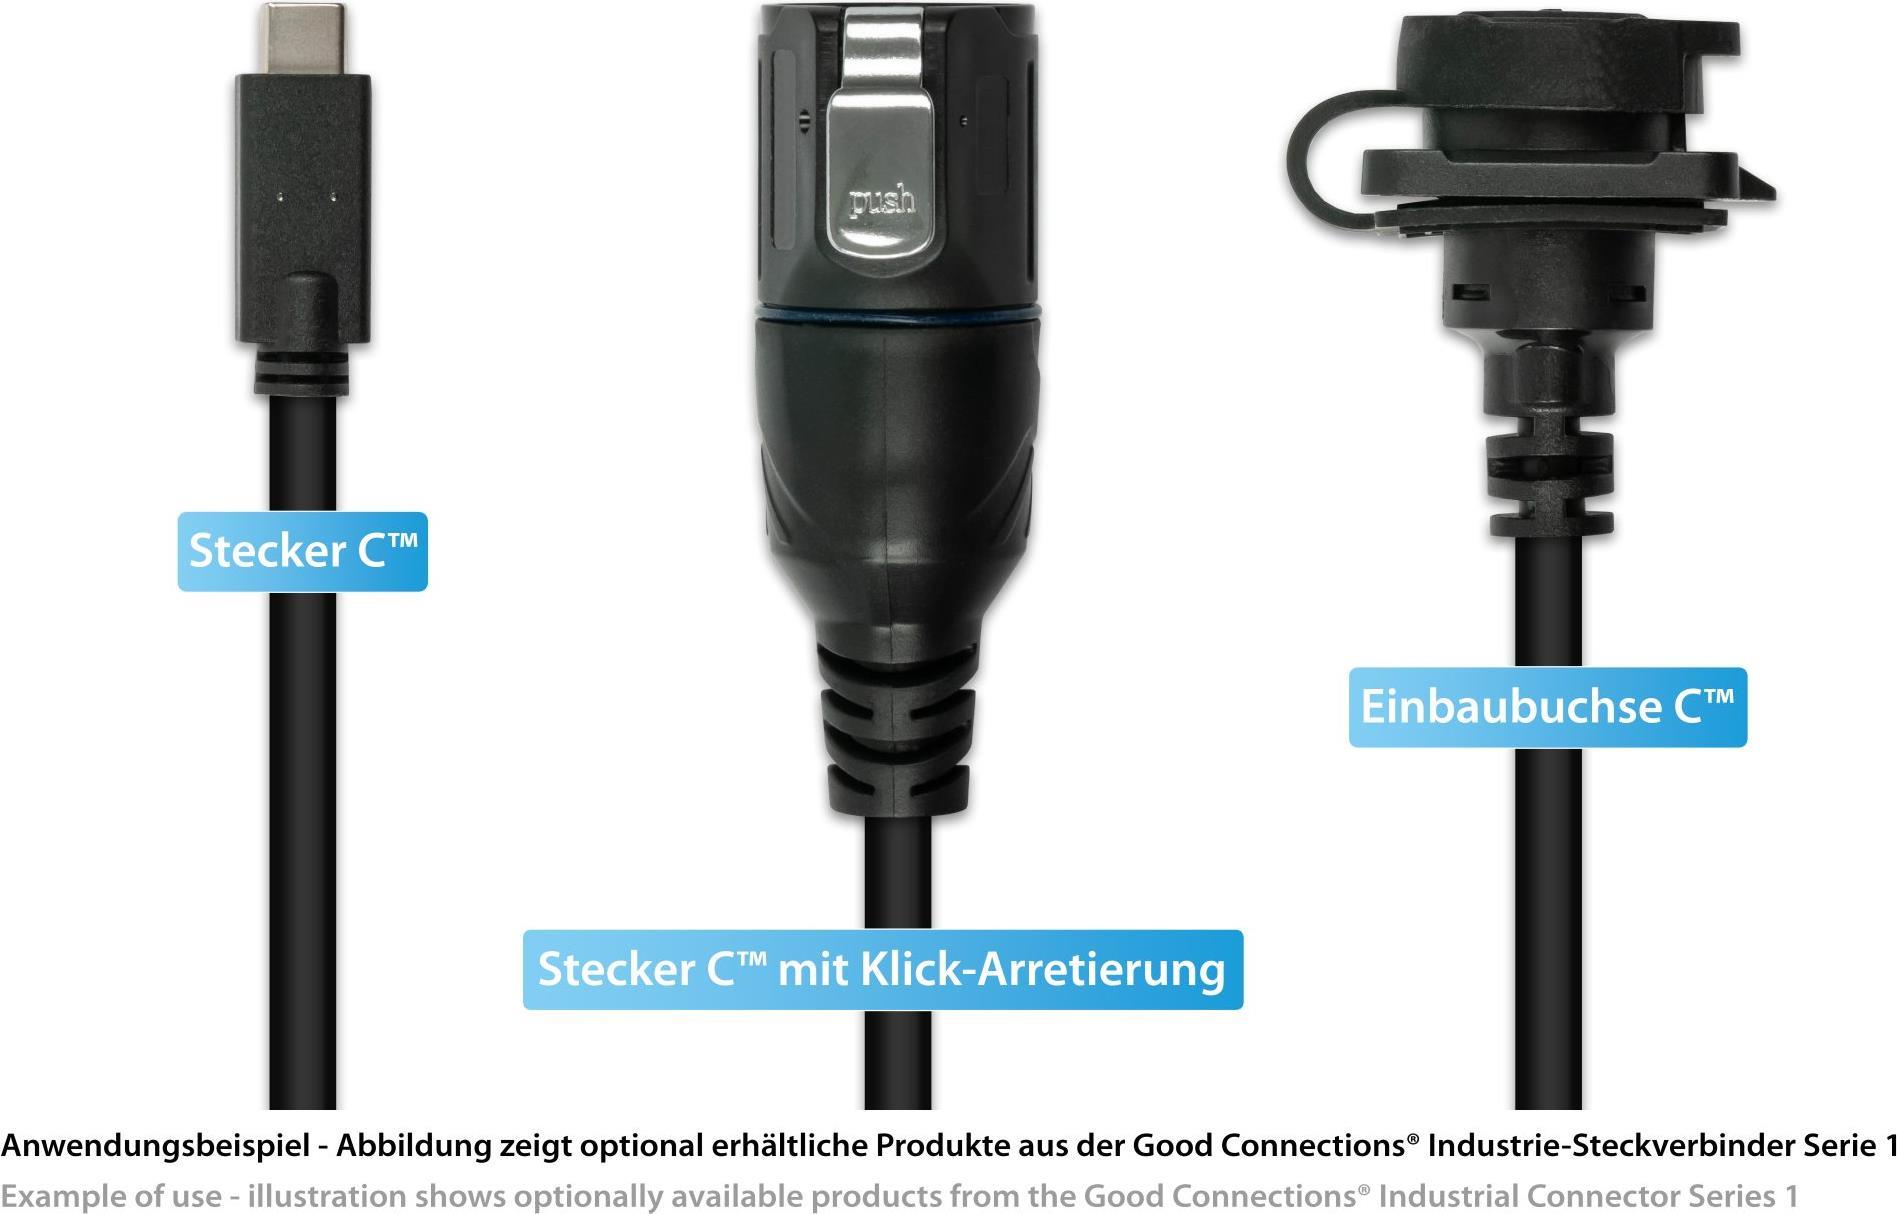 Industrie-Steckverbinder S1 - USB 3.2 Gen. 2 Kabel, Stecker Câ„¢ mit Klick-Arretierung an Stecker Câ„¢ (IC01-16U3101-005)